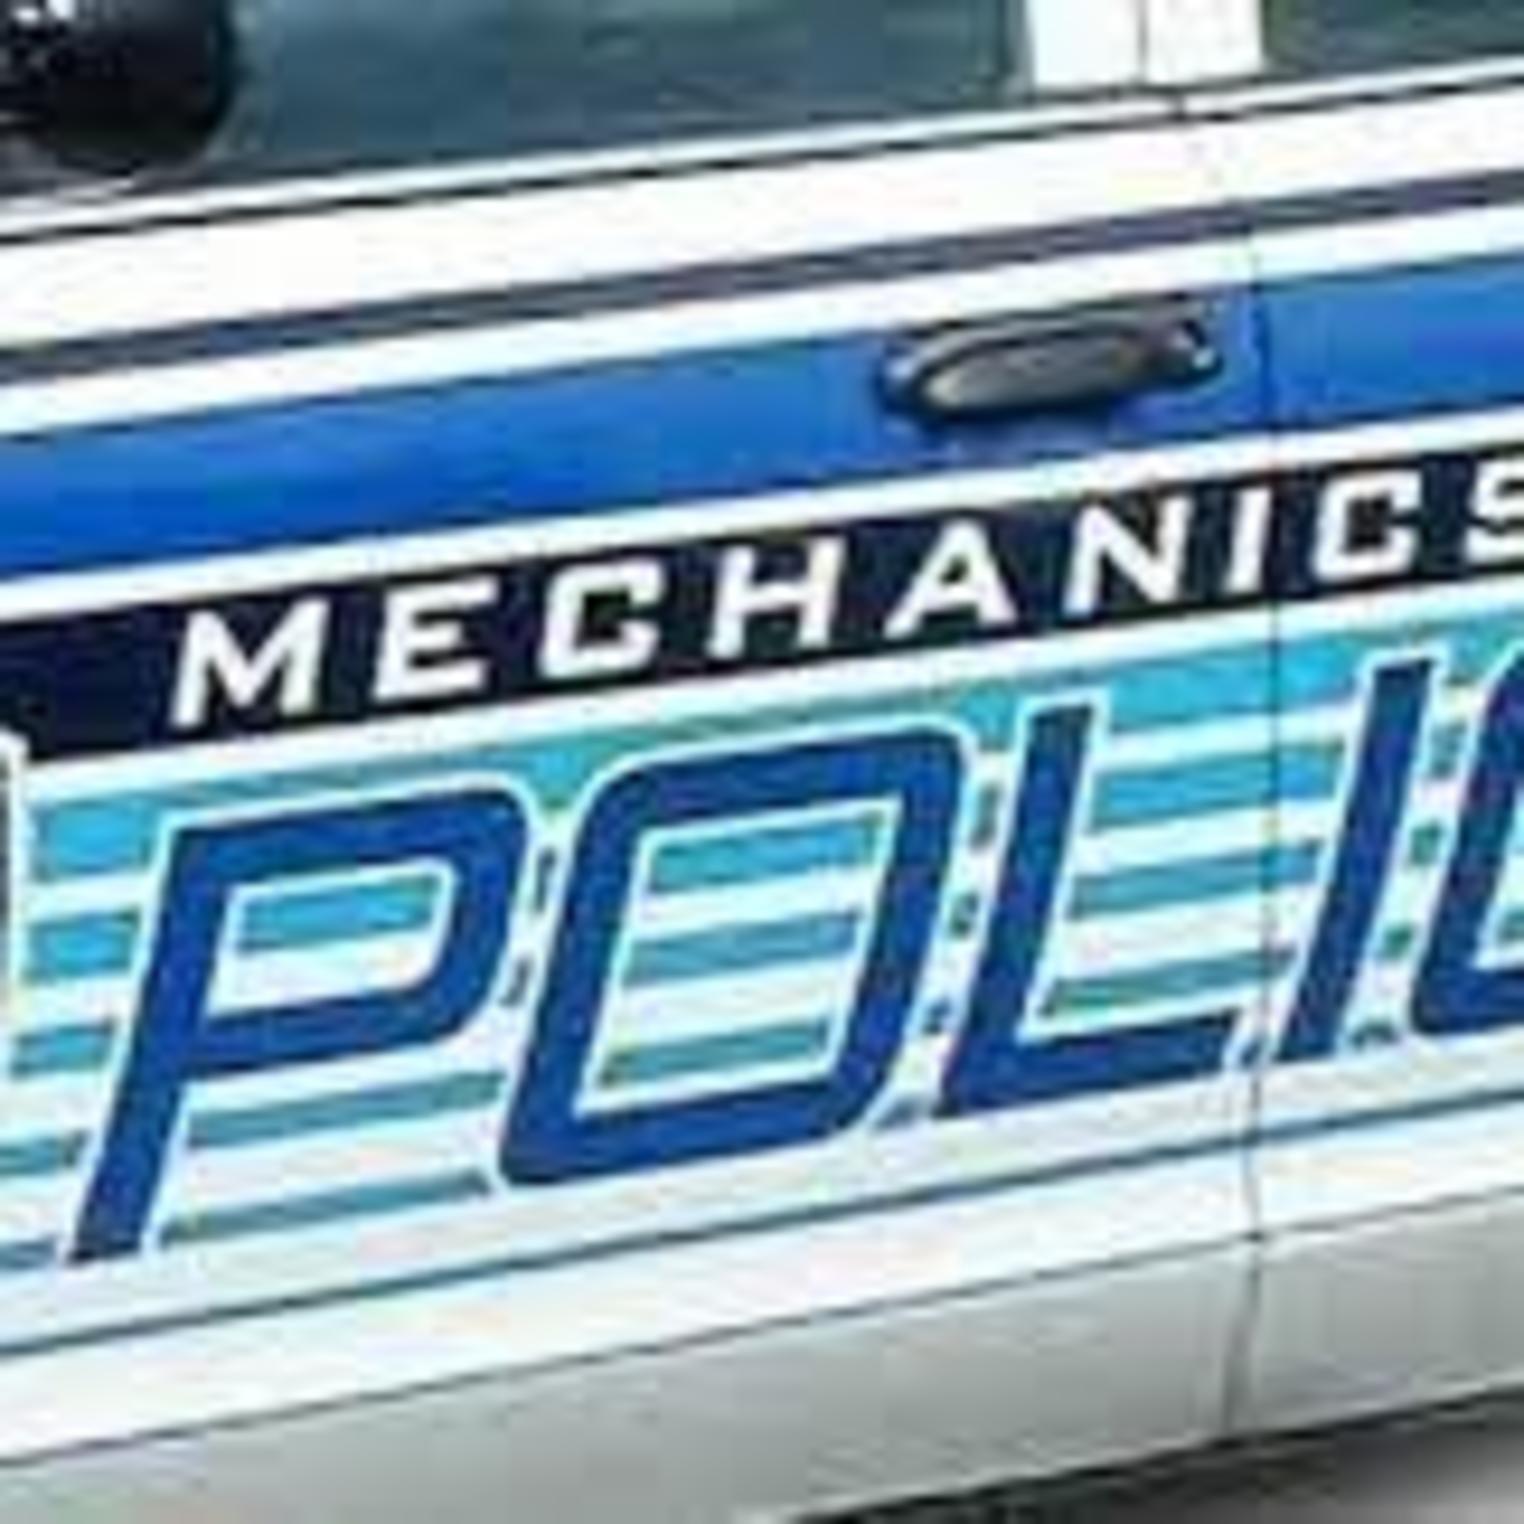 Mechanicsburg Police Department